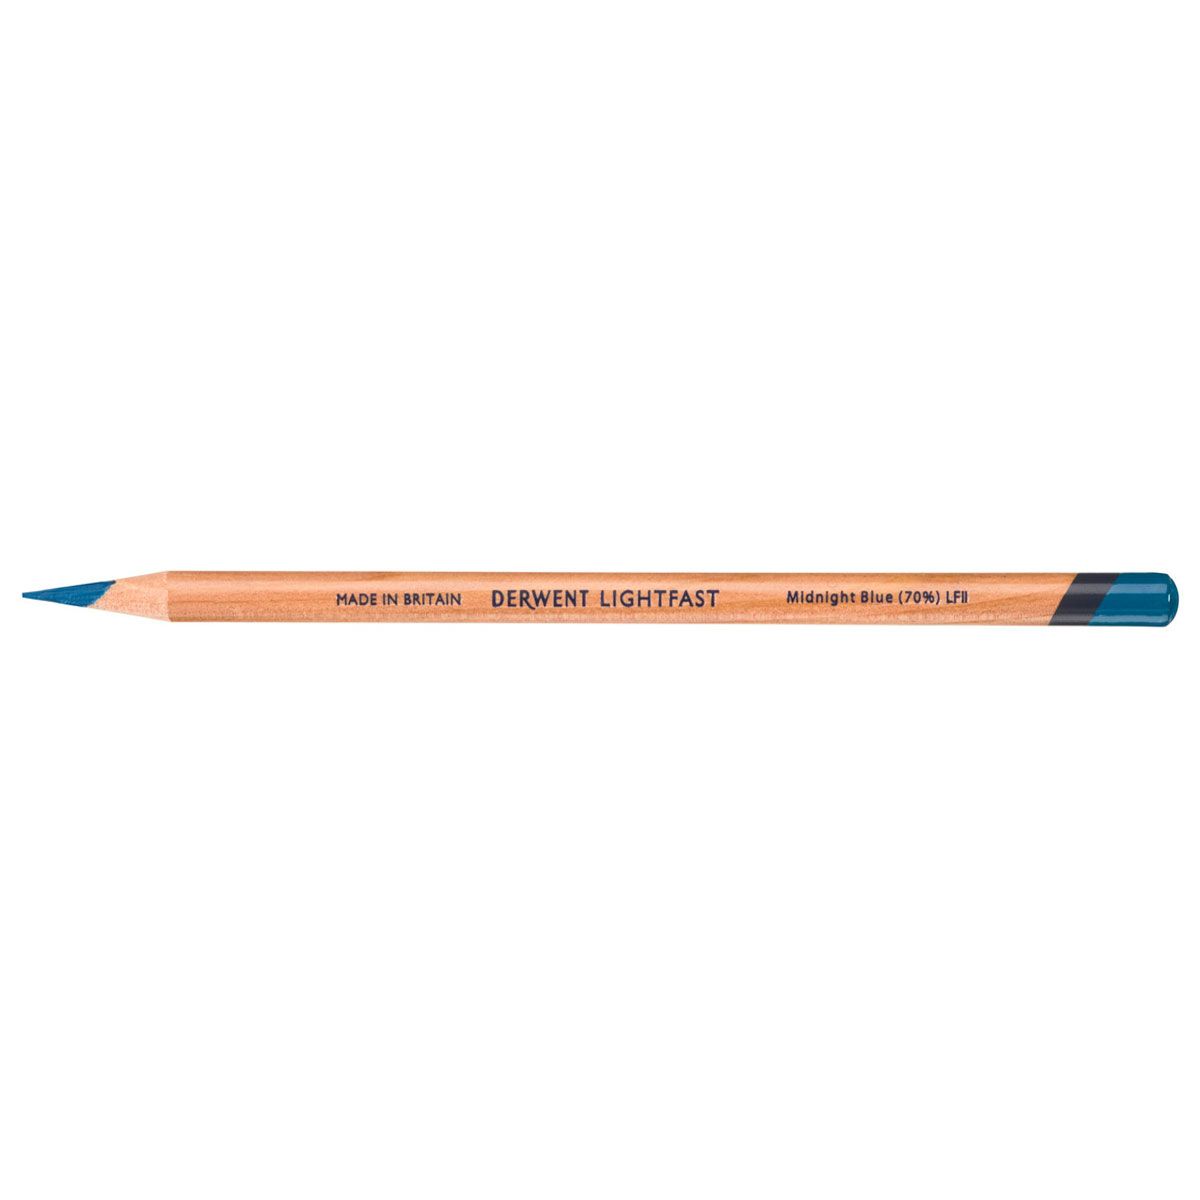 NEW Derwent Lightfast Pencil Colour: Midnight Blue (70%)